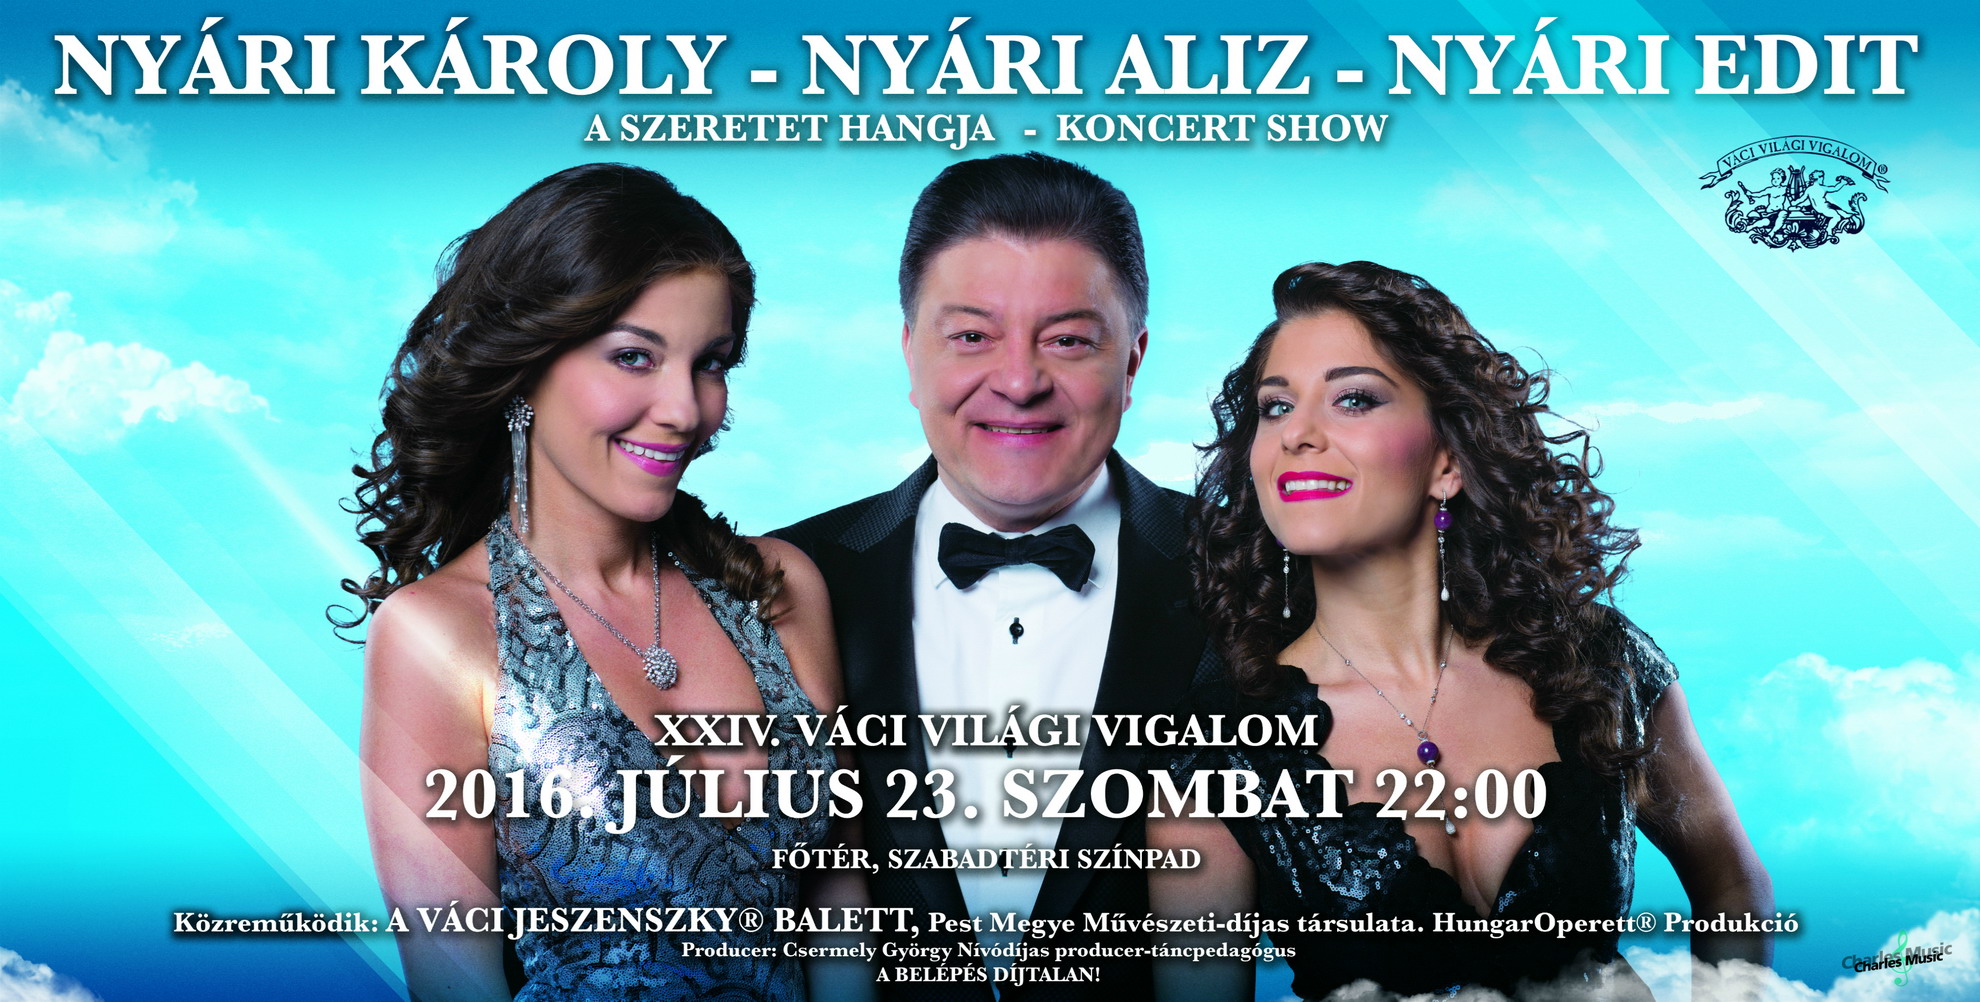 Nyári Károly az ország legismertebb énekes zongoristája és két elbűvölő lánya Nyári Aliz és Nyári Edit különleges koncert show műsort mutat be a XXIV. Váci Világi Vigalom alkalmával.